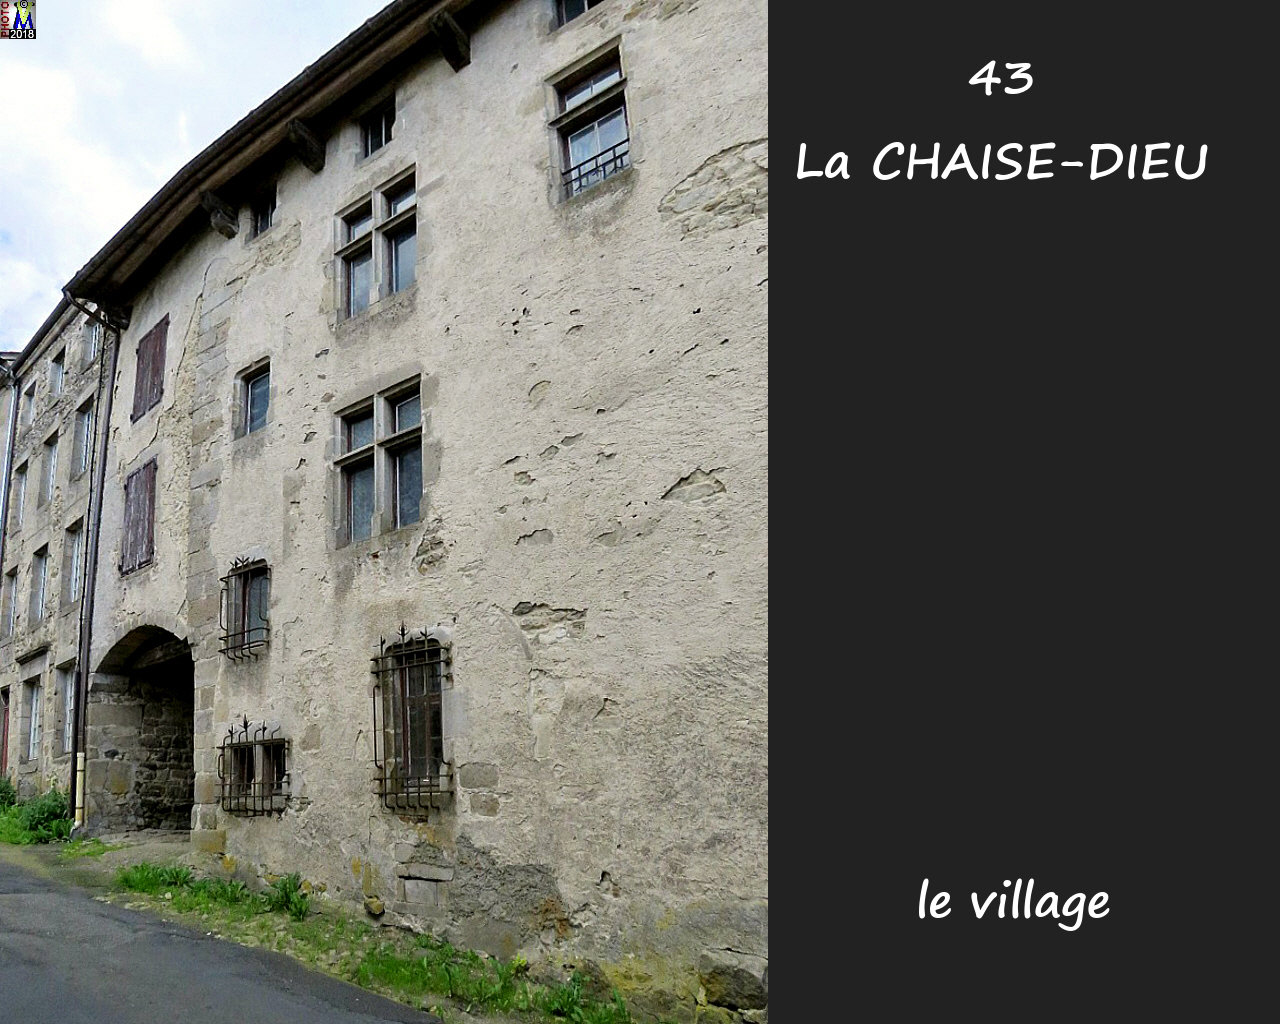 43CHAISE-DIEU_village_134.jpg